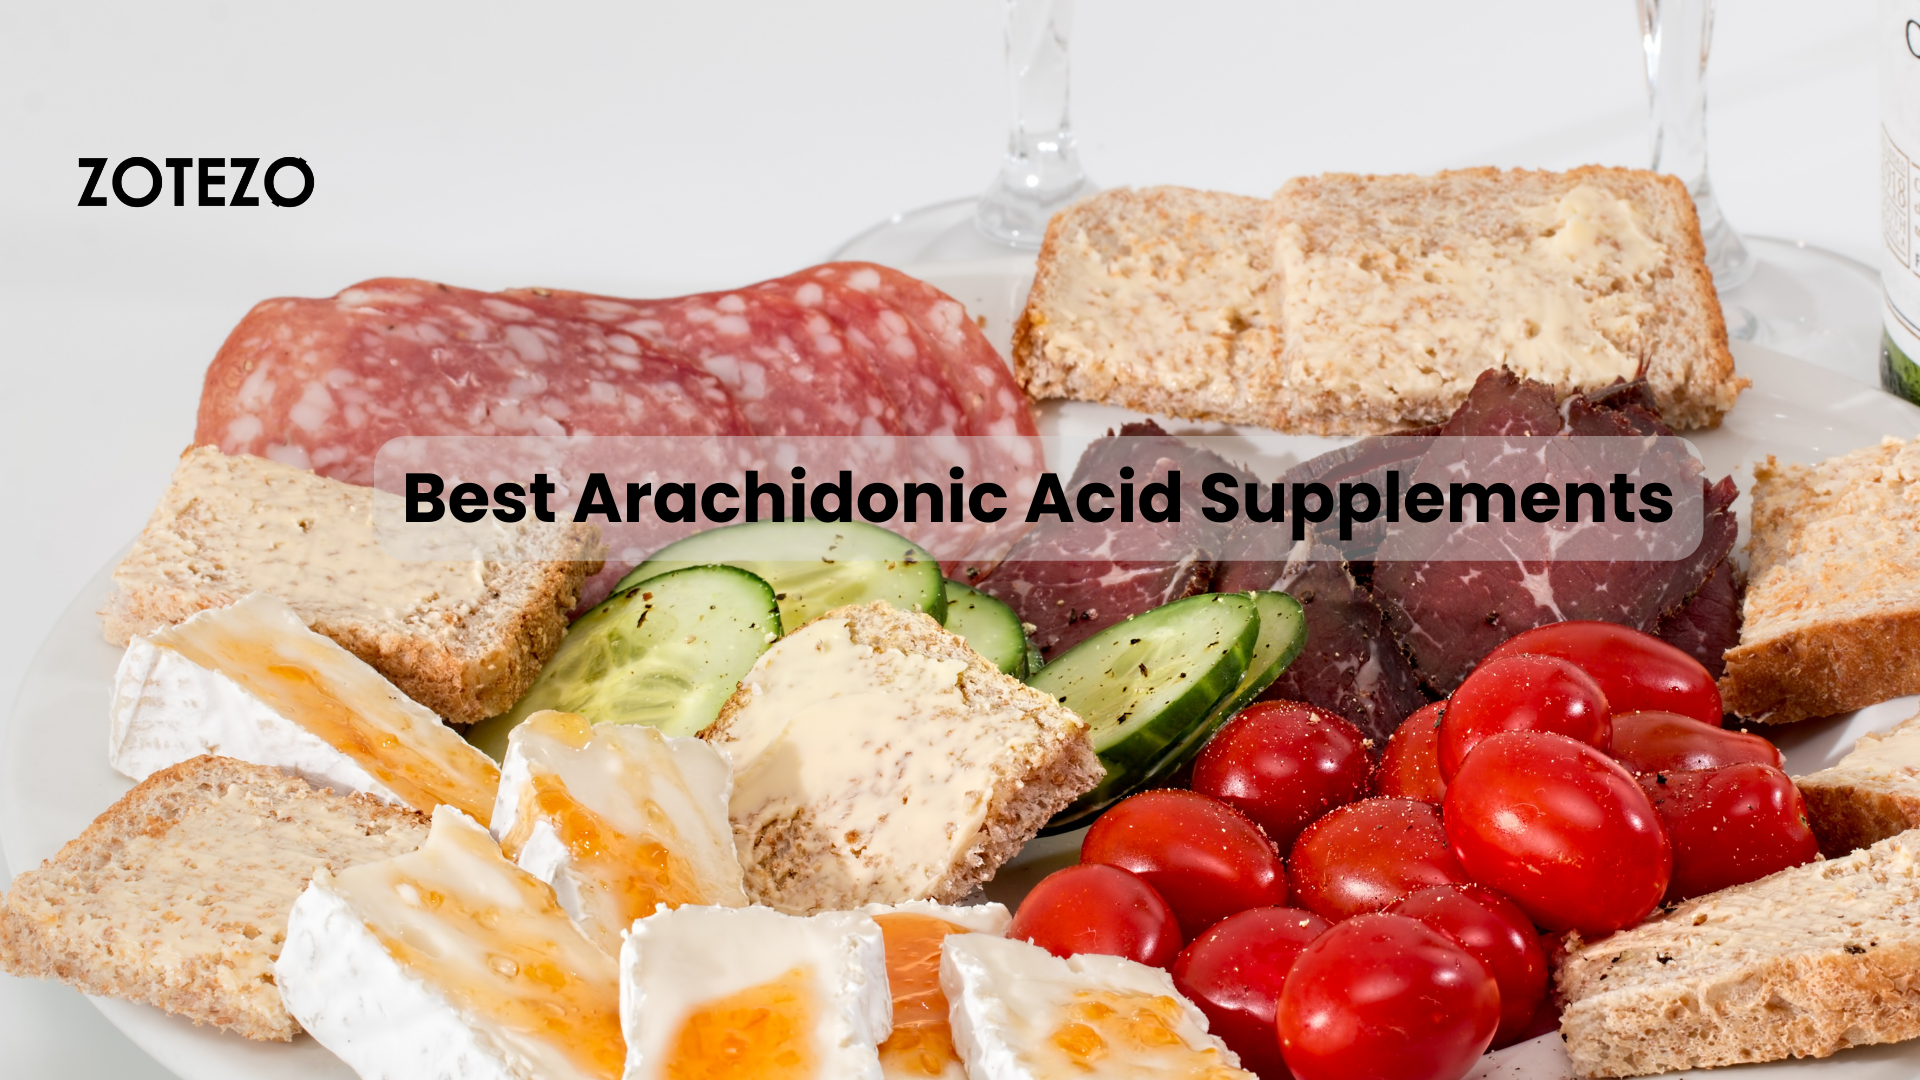 Arachidonic Acid Supplements in Sweden